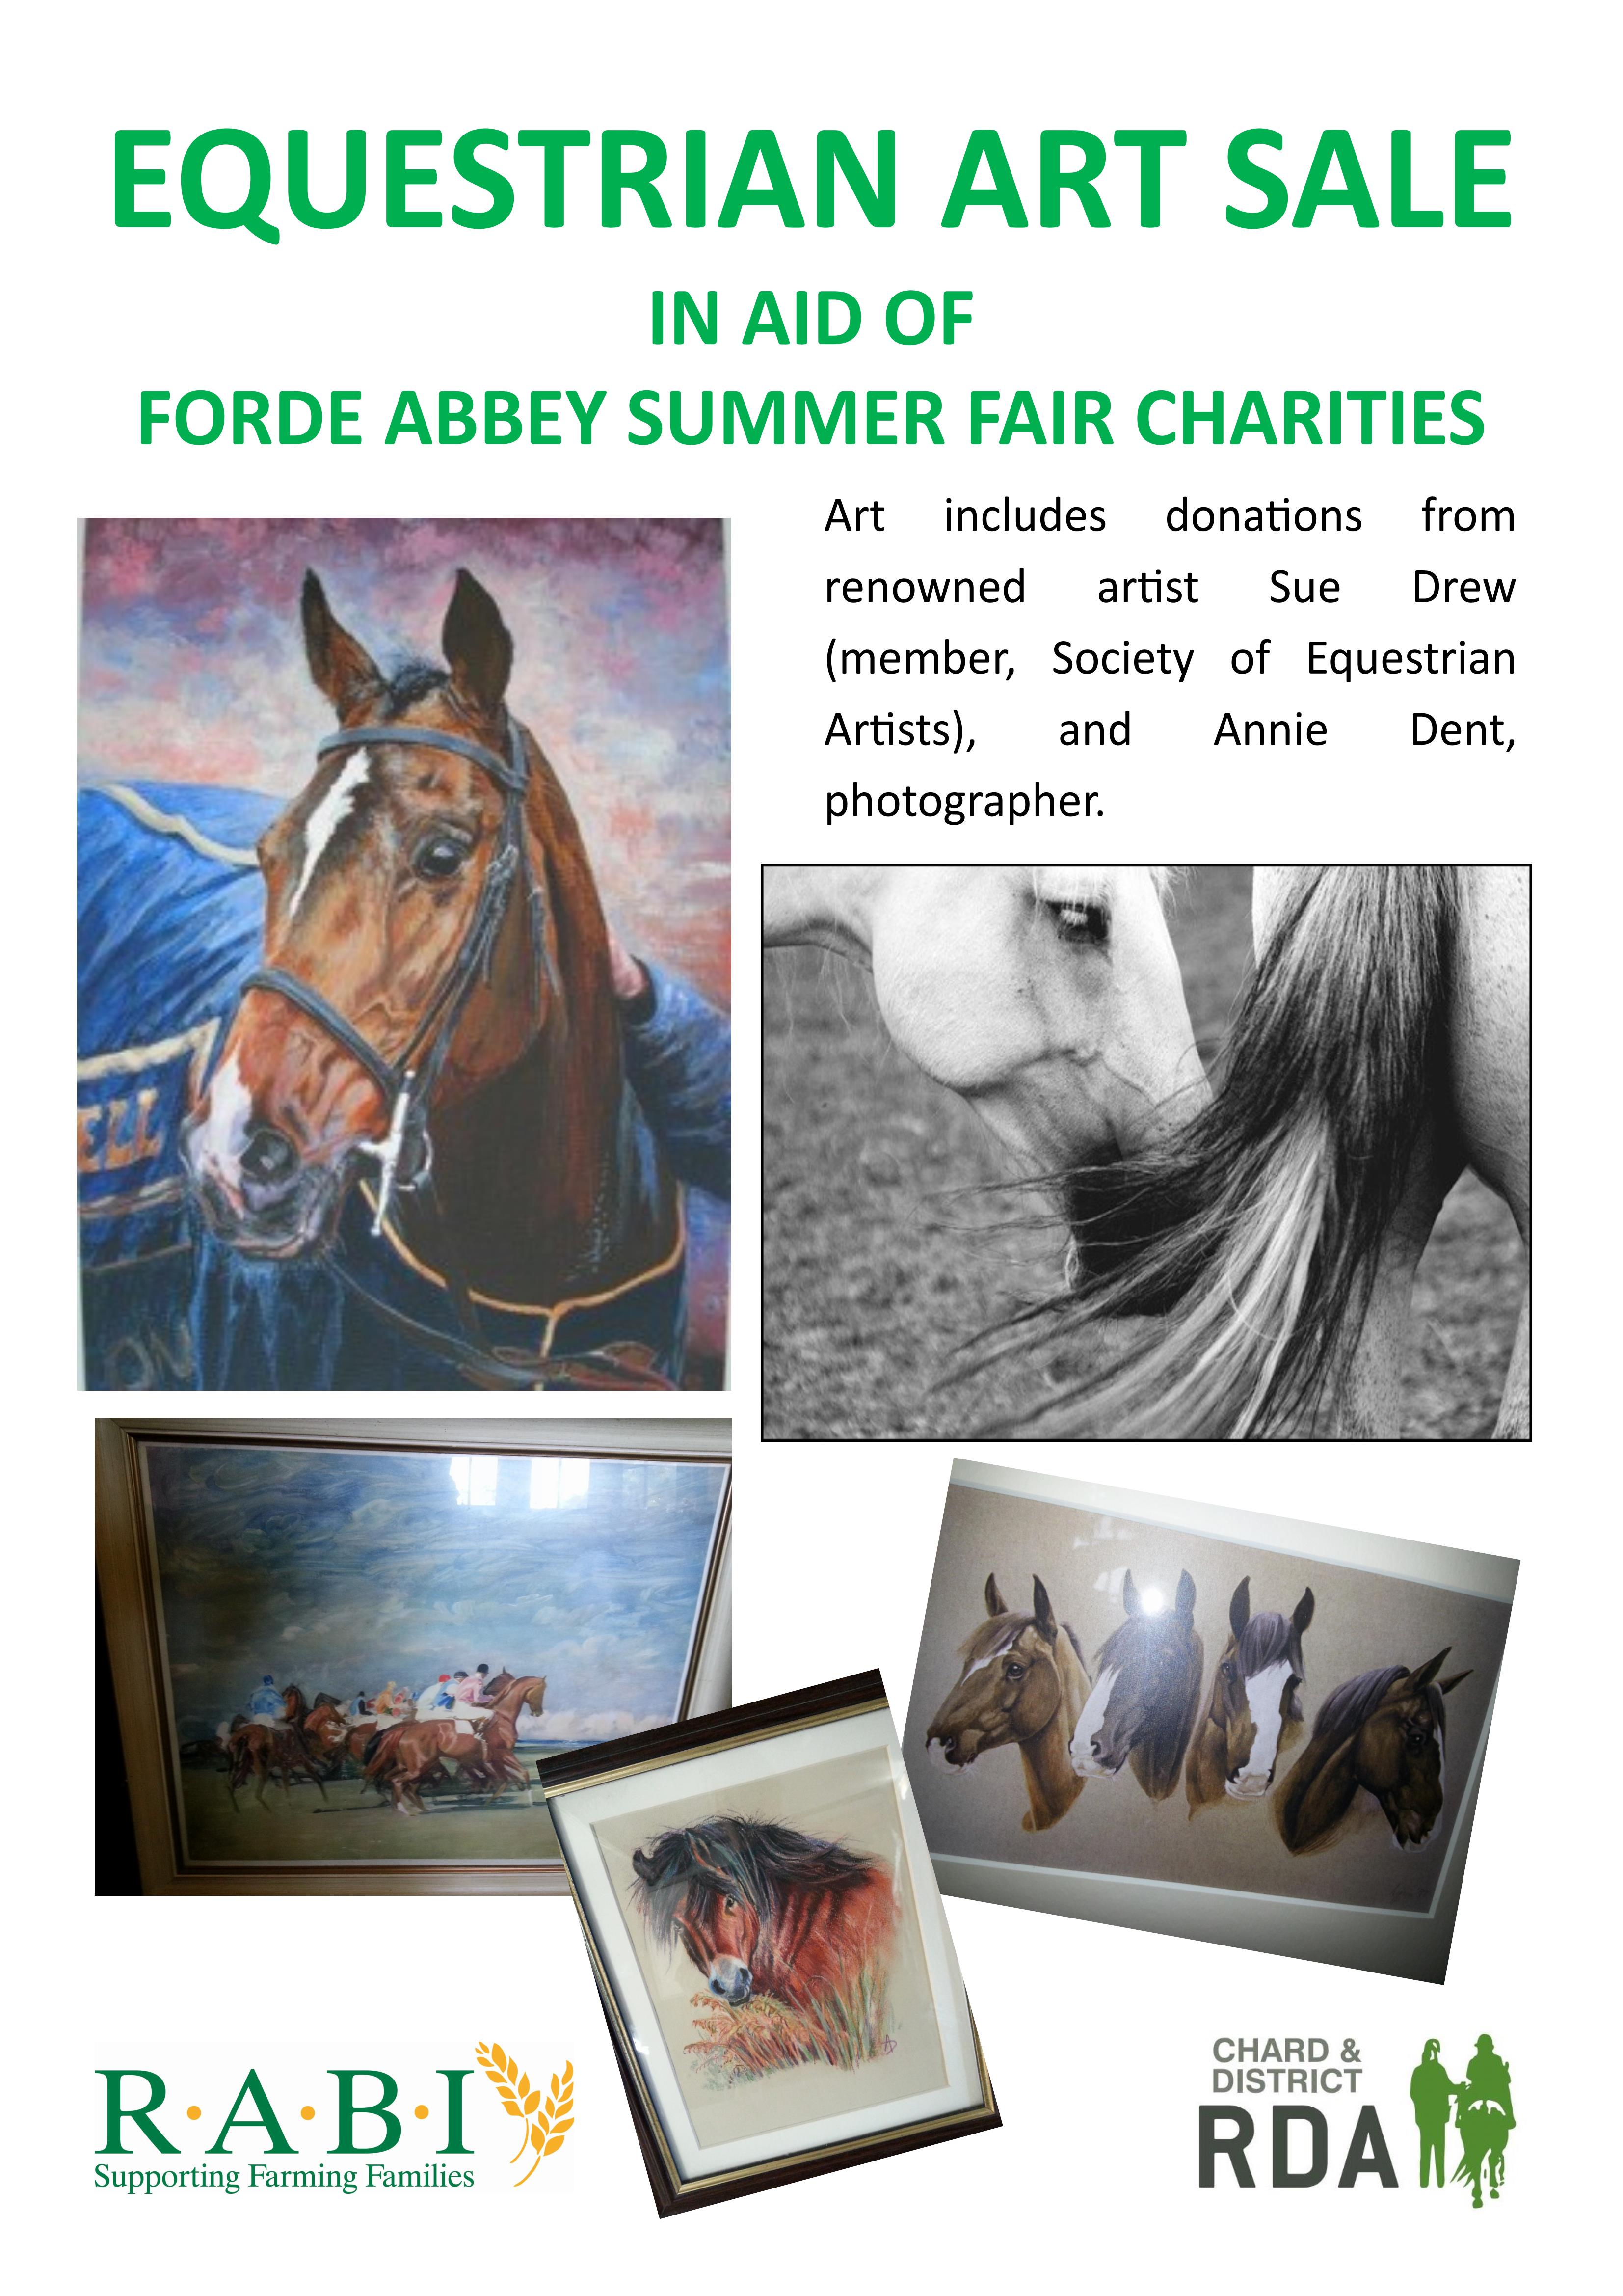 Equestrian Art sale at Forde Abbey Summer Fair